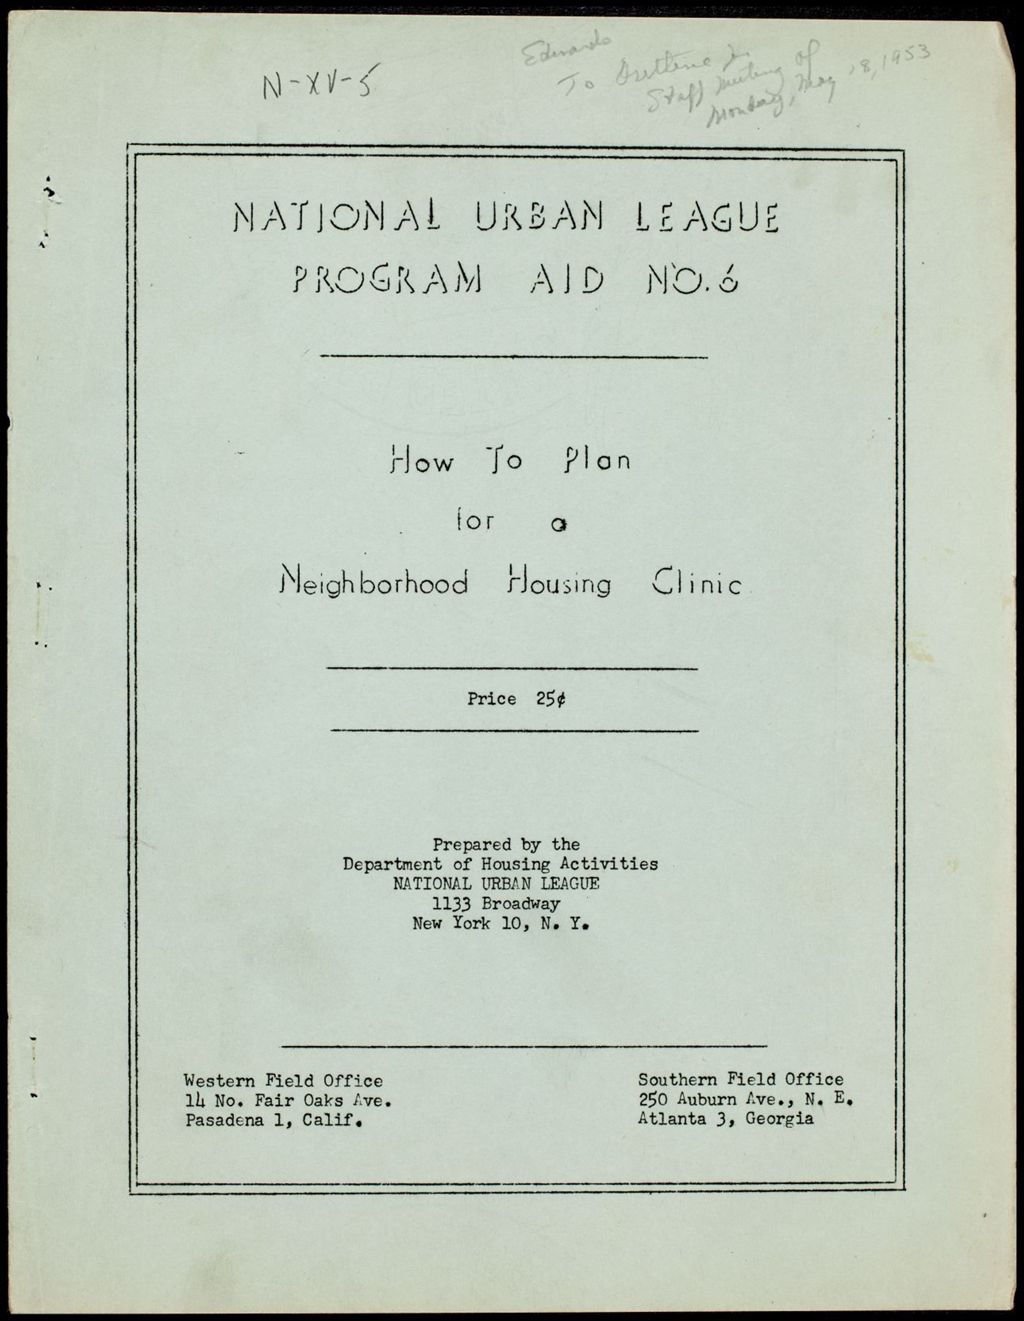 Miniature of National Urban League-Program Aids Nos. 5 and 6, 1953 (Folder I-2752)